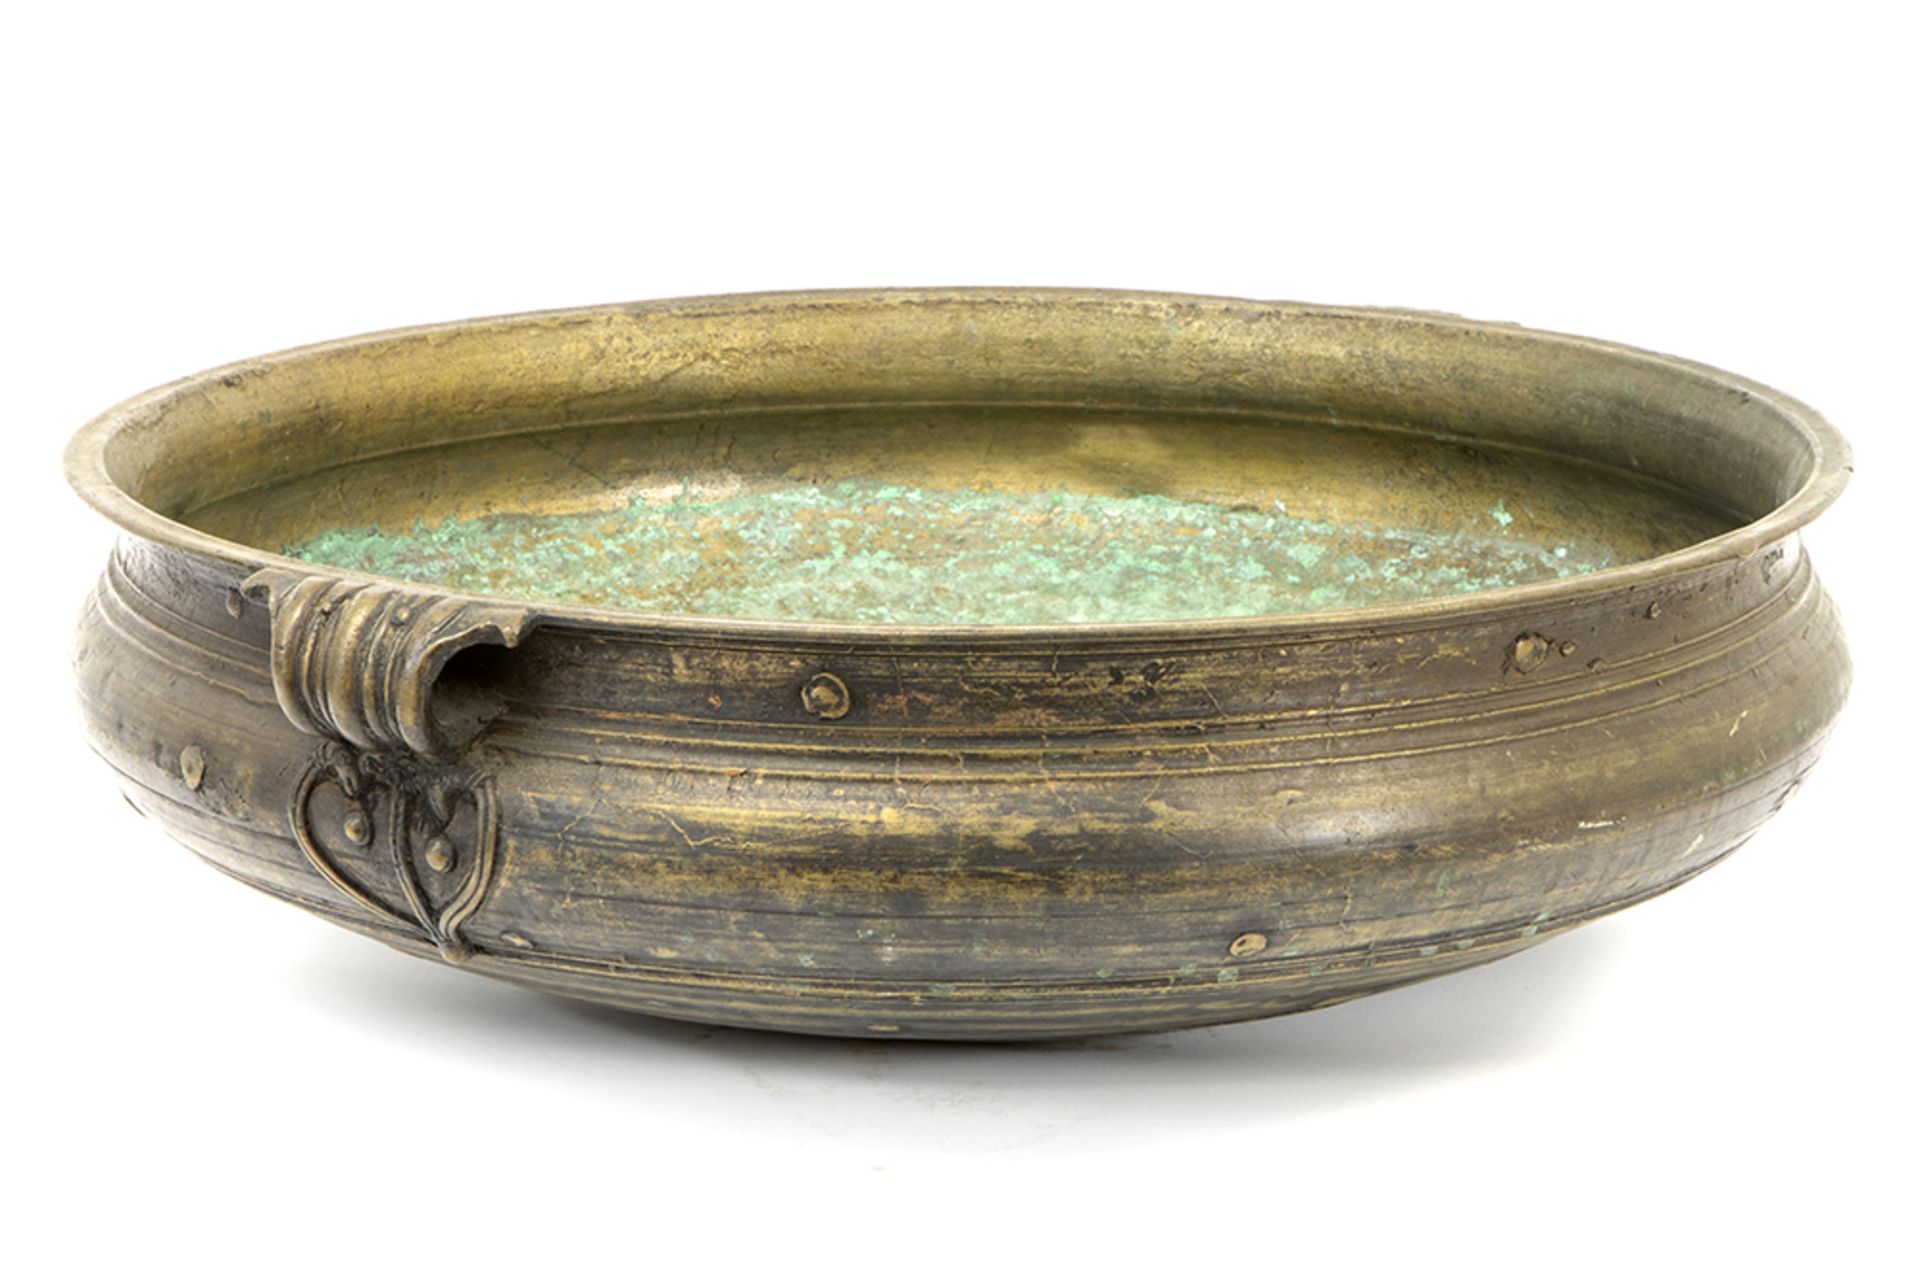 antique (?) Indian "Charakku" or "Urly" temple cooking basin in bronze || Antieke (?) Indische "